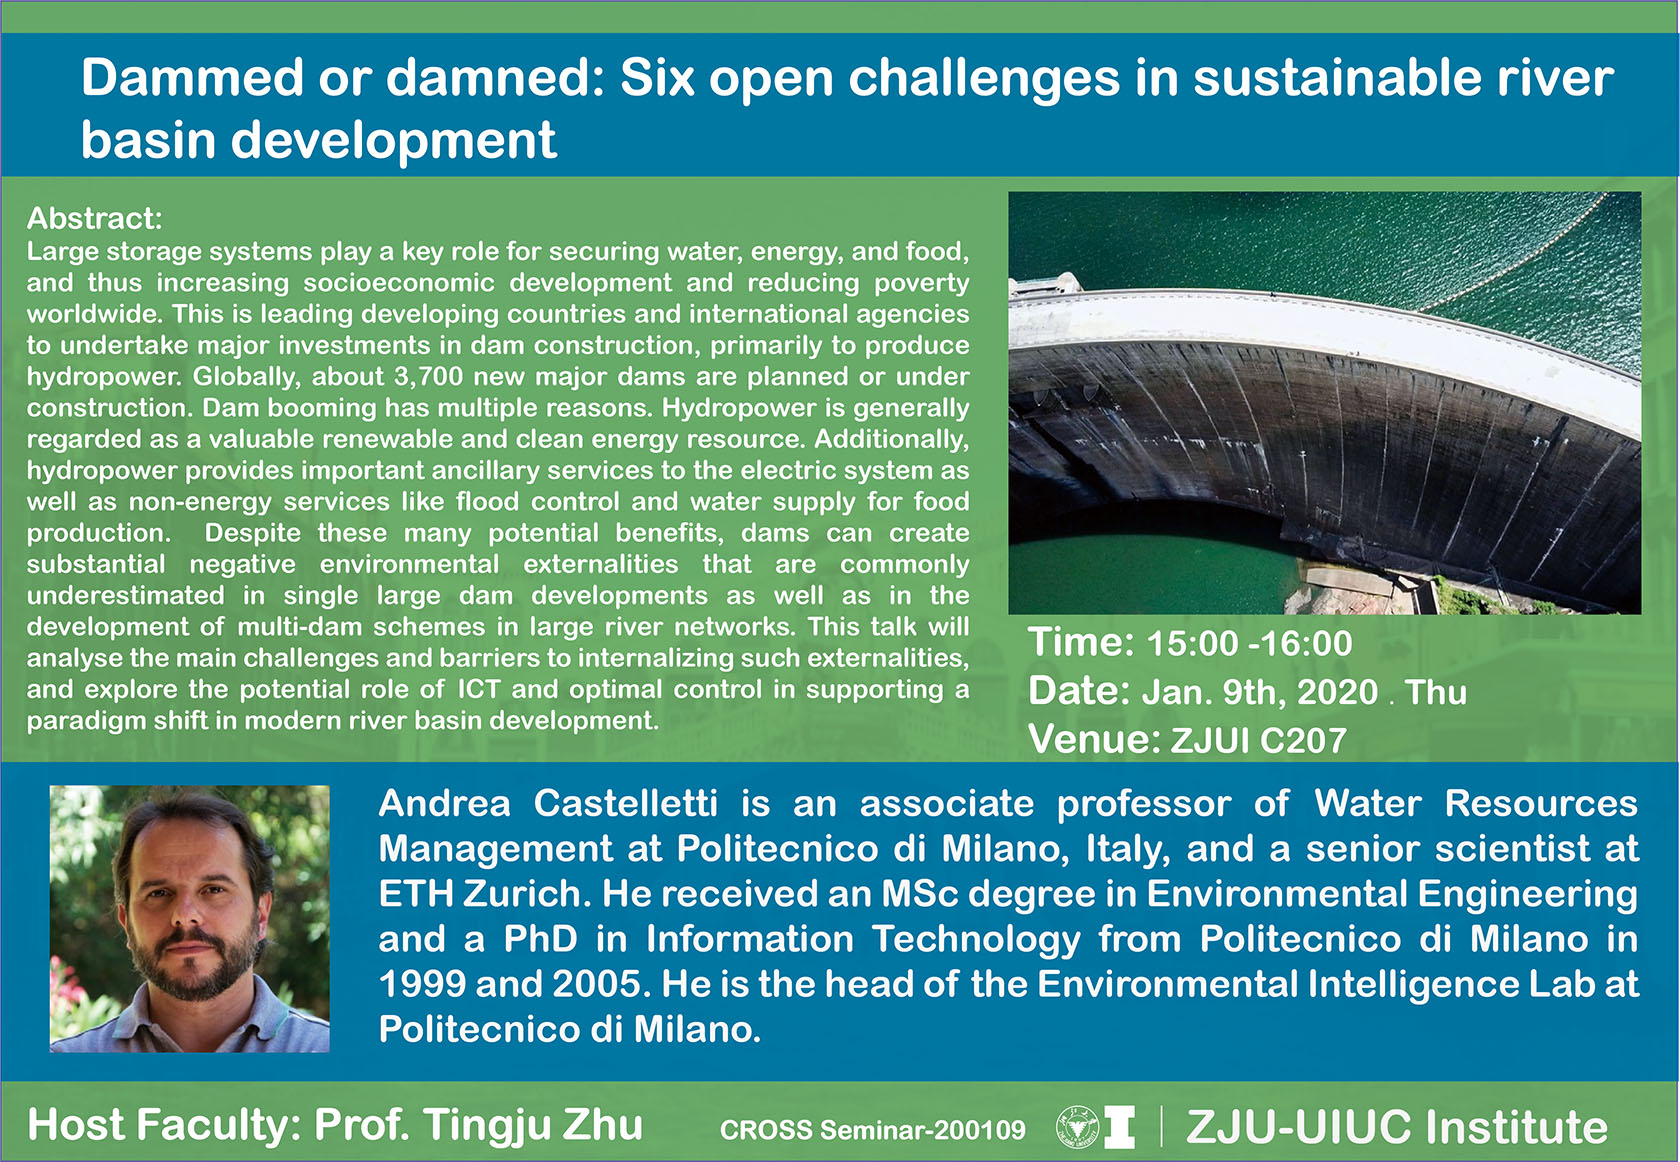 [讲座] Andrea Castelletti教授：可持续河流流域开发面临的六大公开挑战